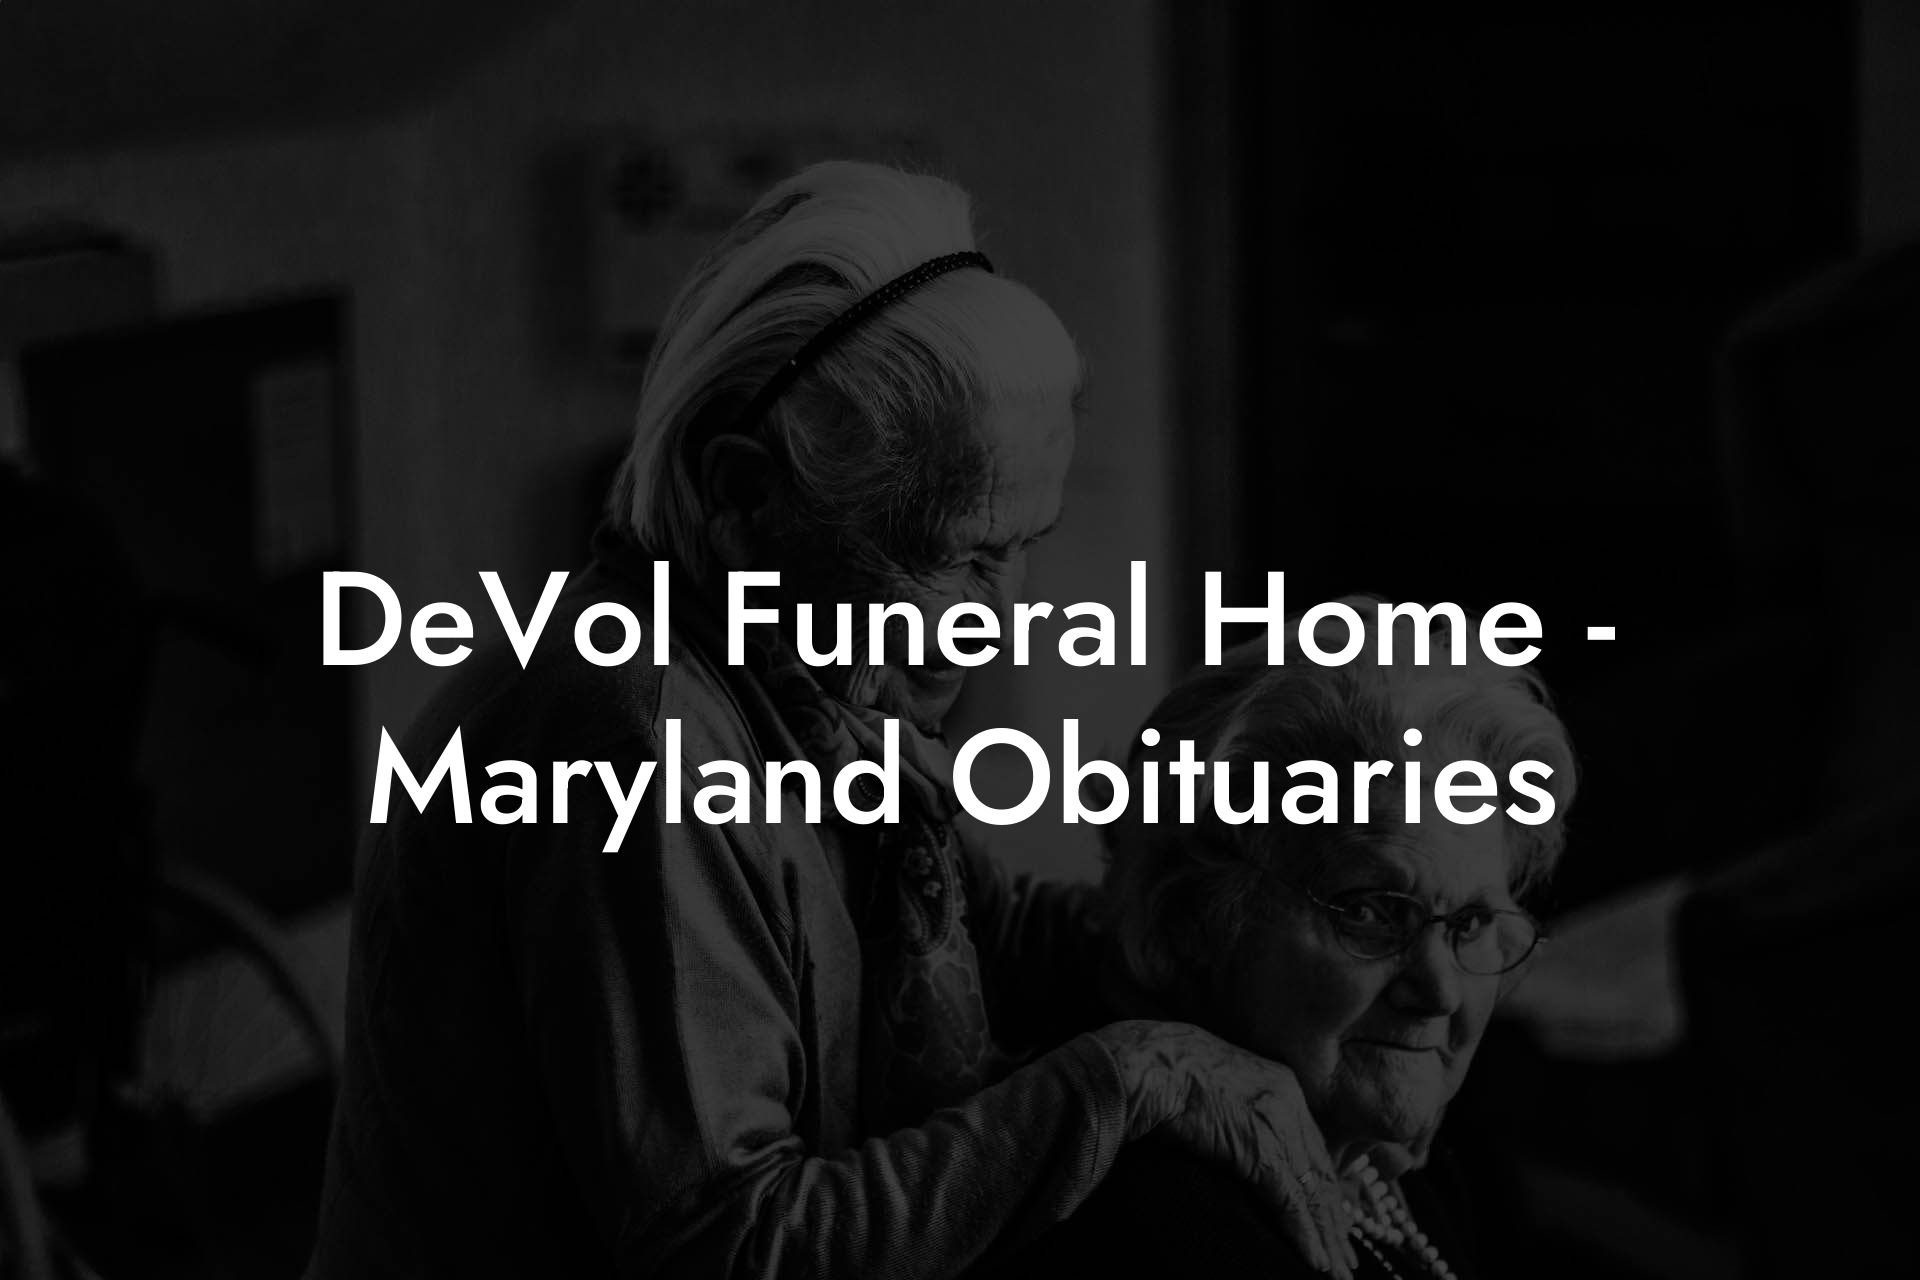 DeVol Funeral Home - Maryland Obituaries